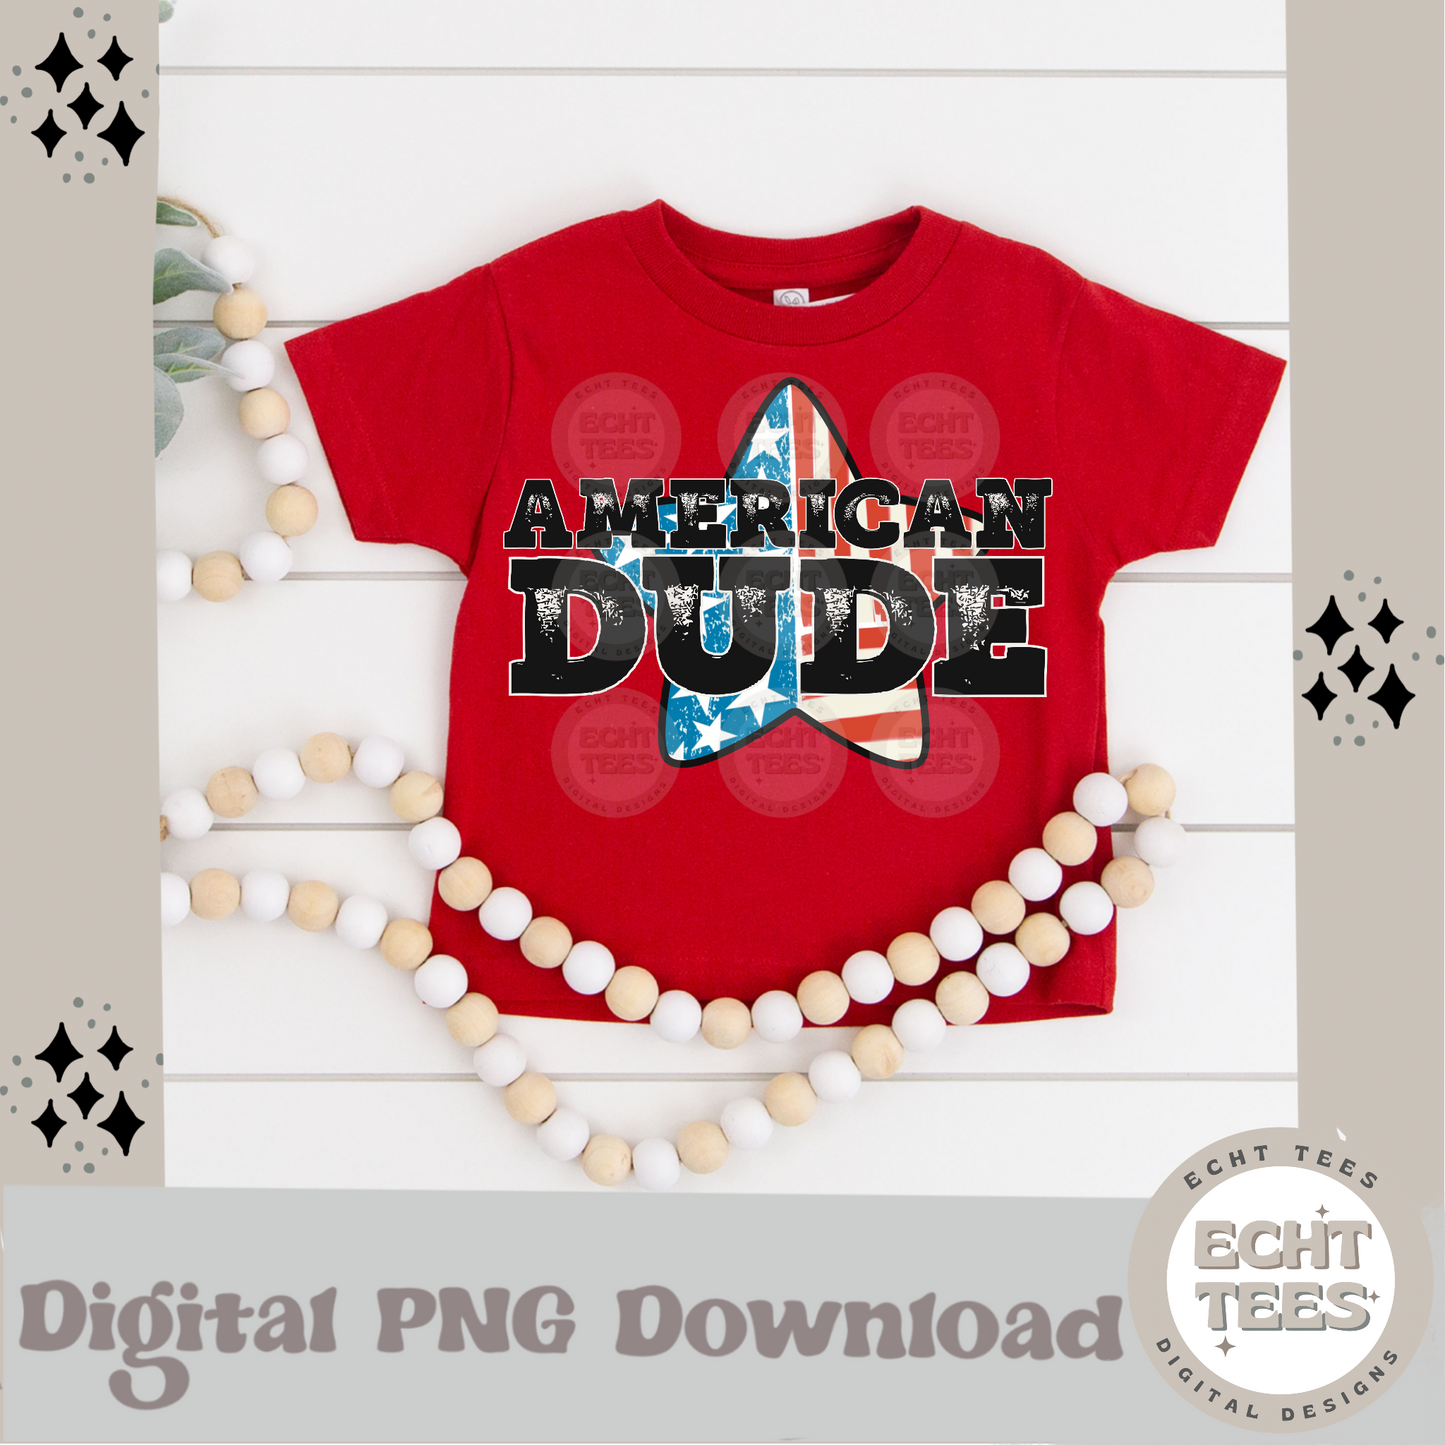 American Dude PNG Digital Download